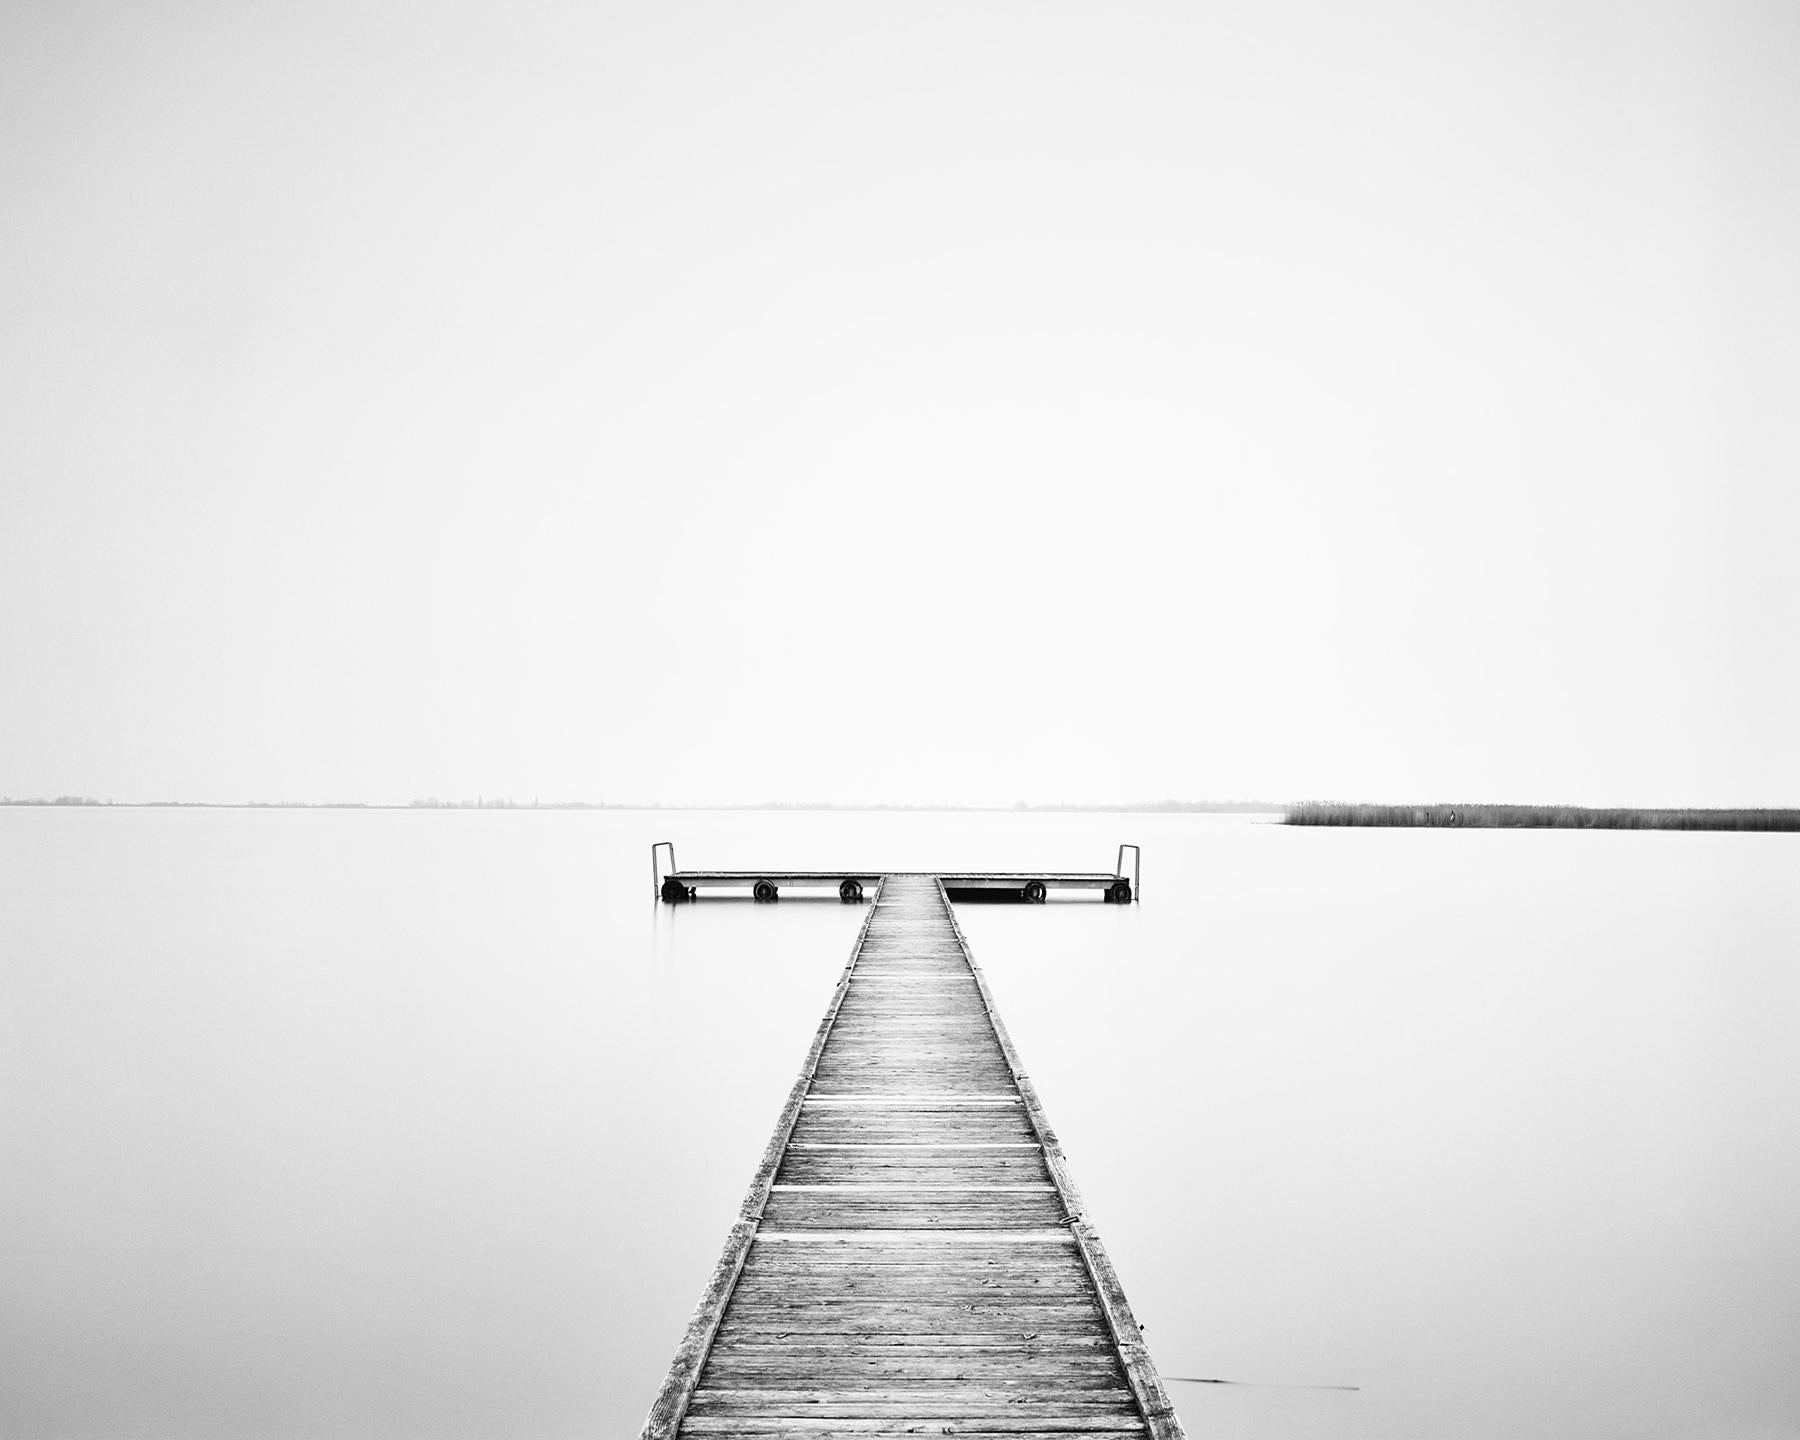 Black and White Photograph Gerald Berghammer - Wood Pier, matinée ensoleillée, édition limitée de photographies en noir et blanc, watescape